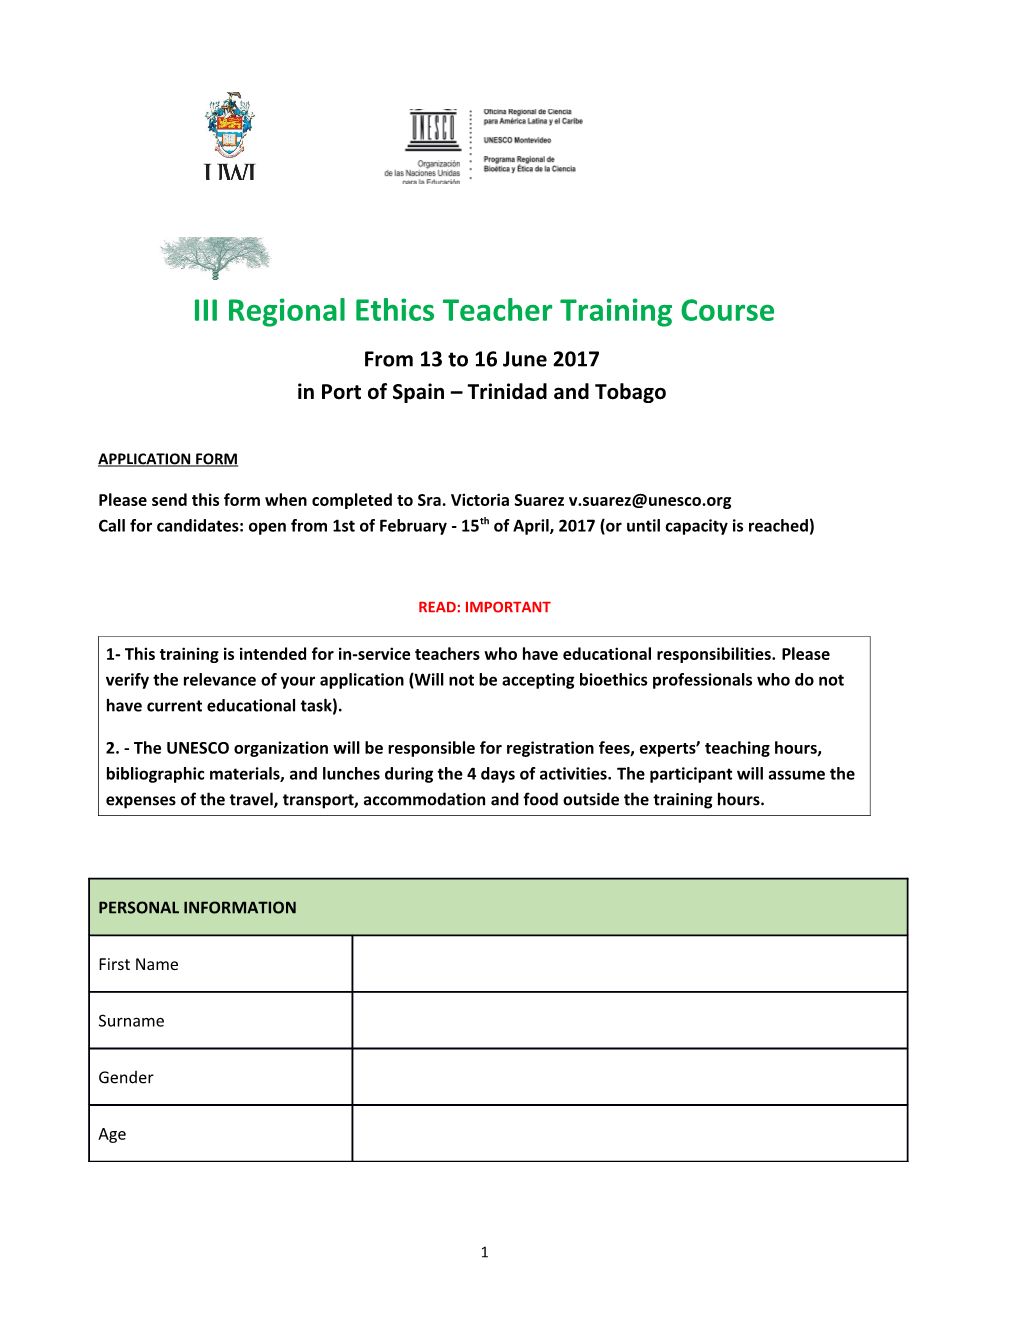 Annex I: Model Programme for Ethics Teacher Training Course